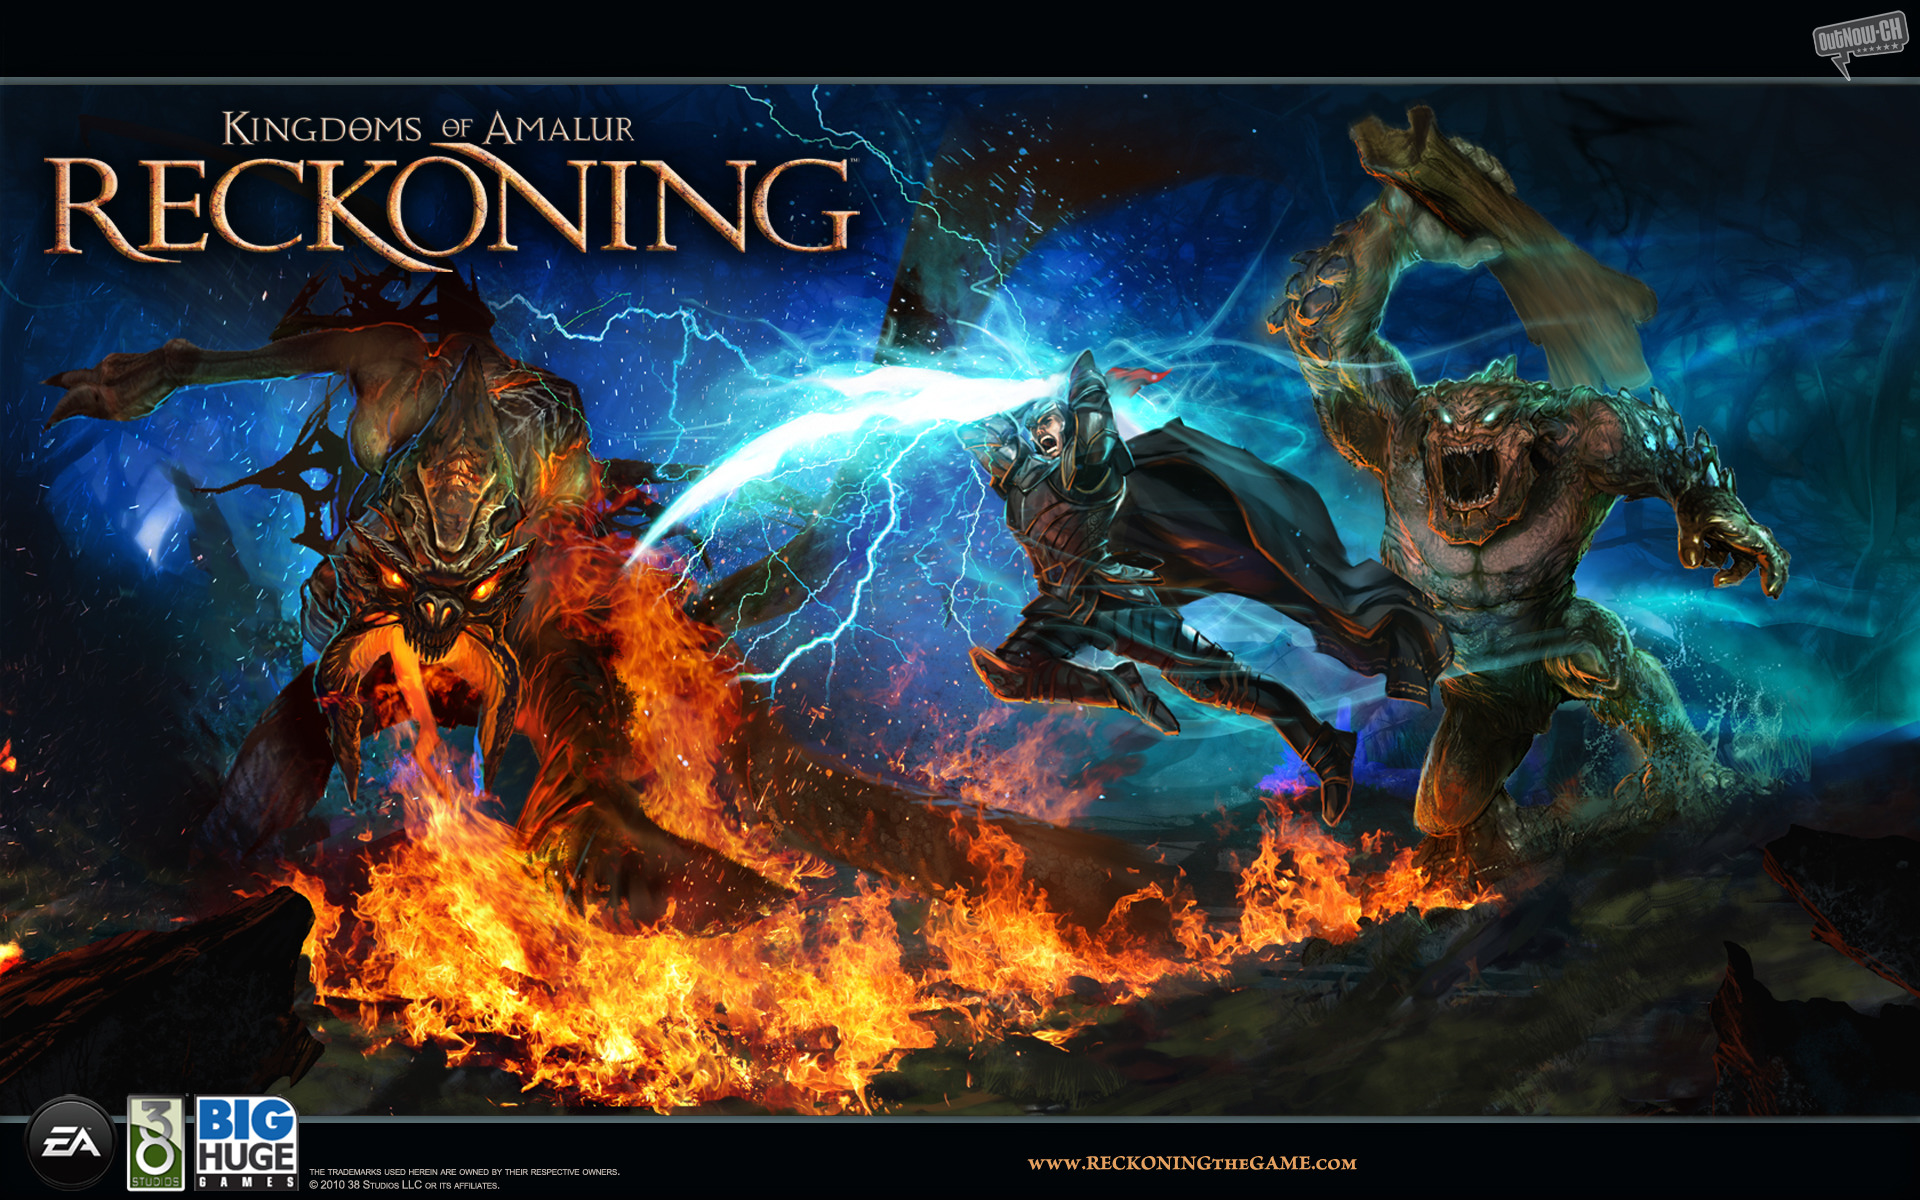 video game, kingdoms of amalur: reckoning, creature, fire, flame, reckoning, kingdoms of amalur